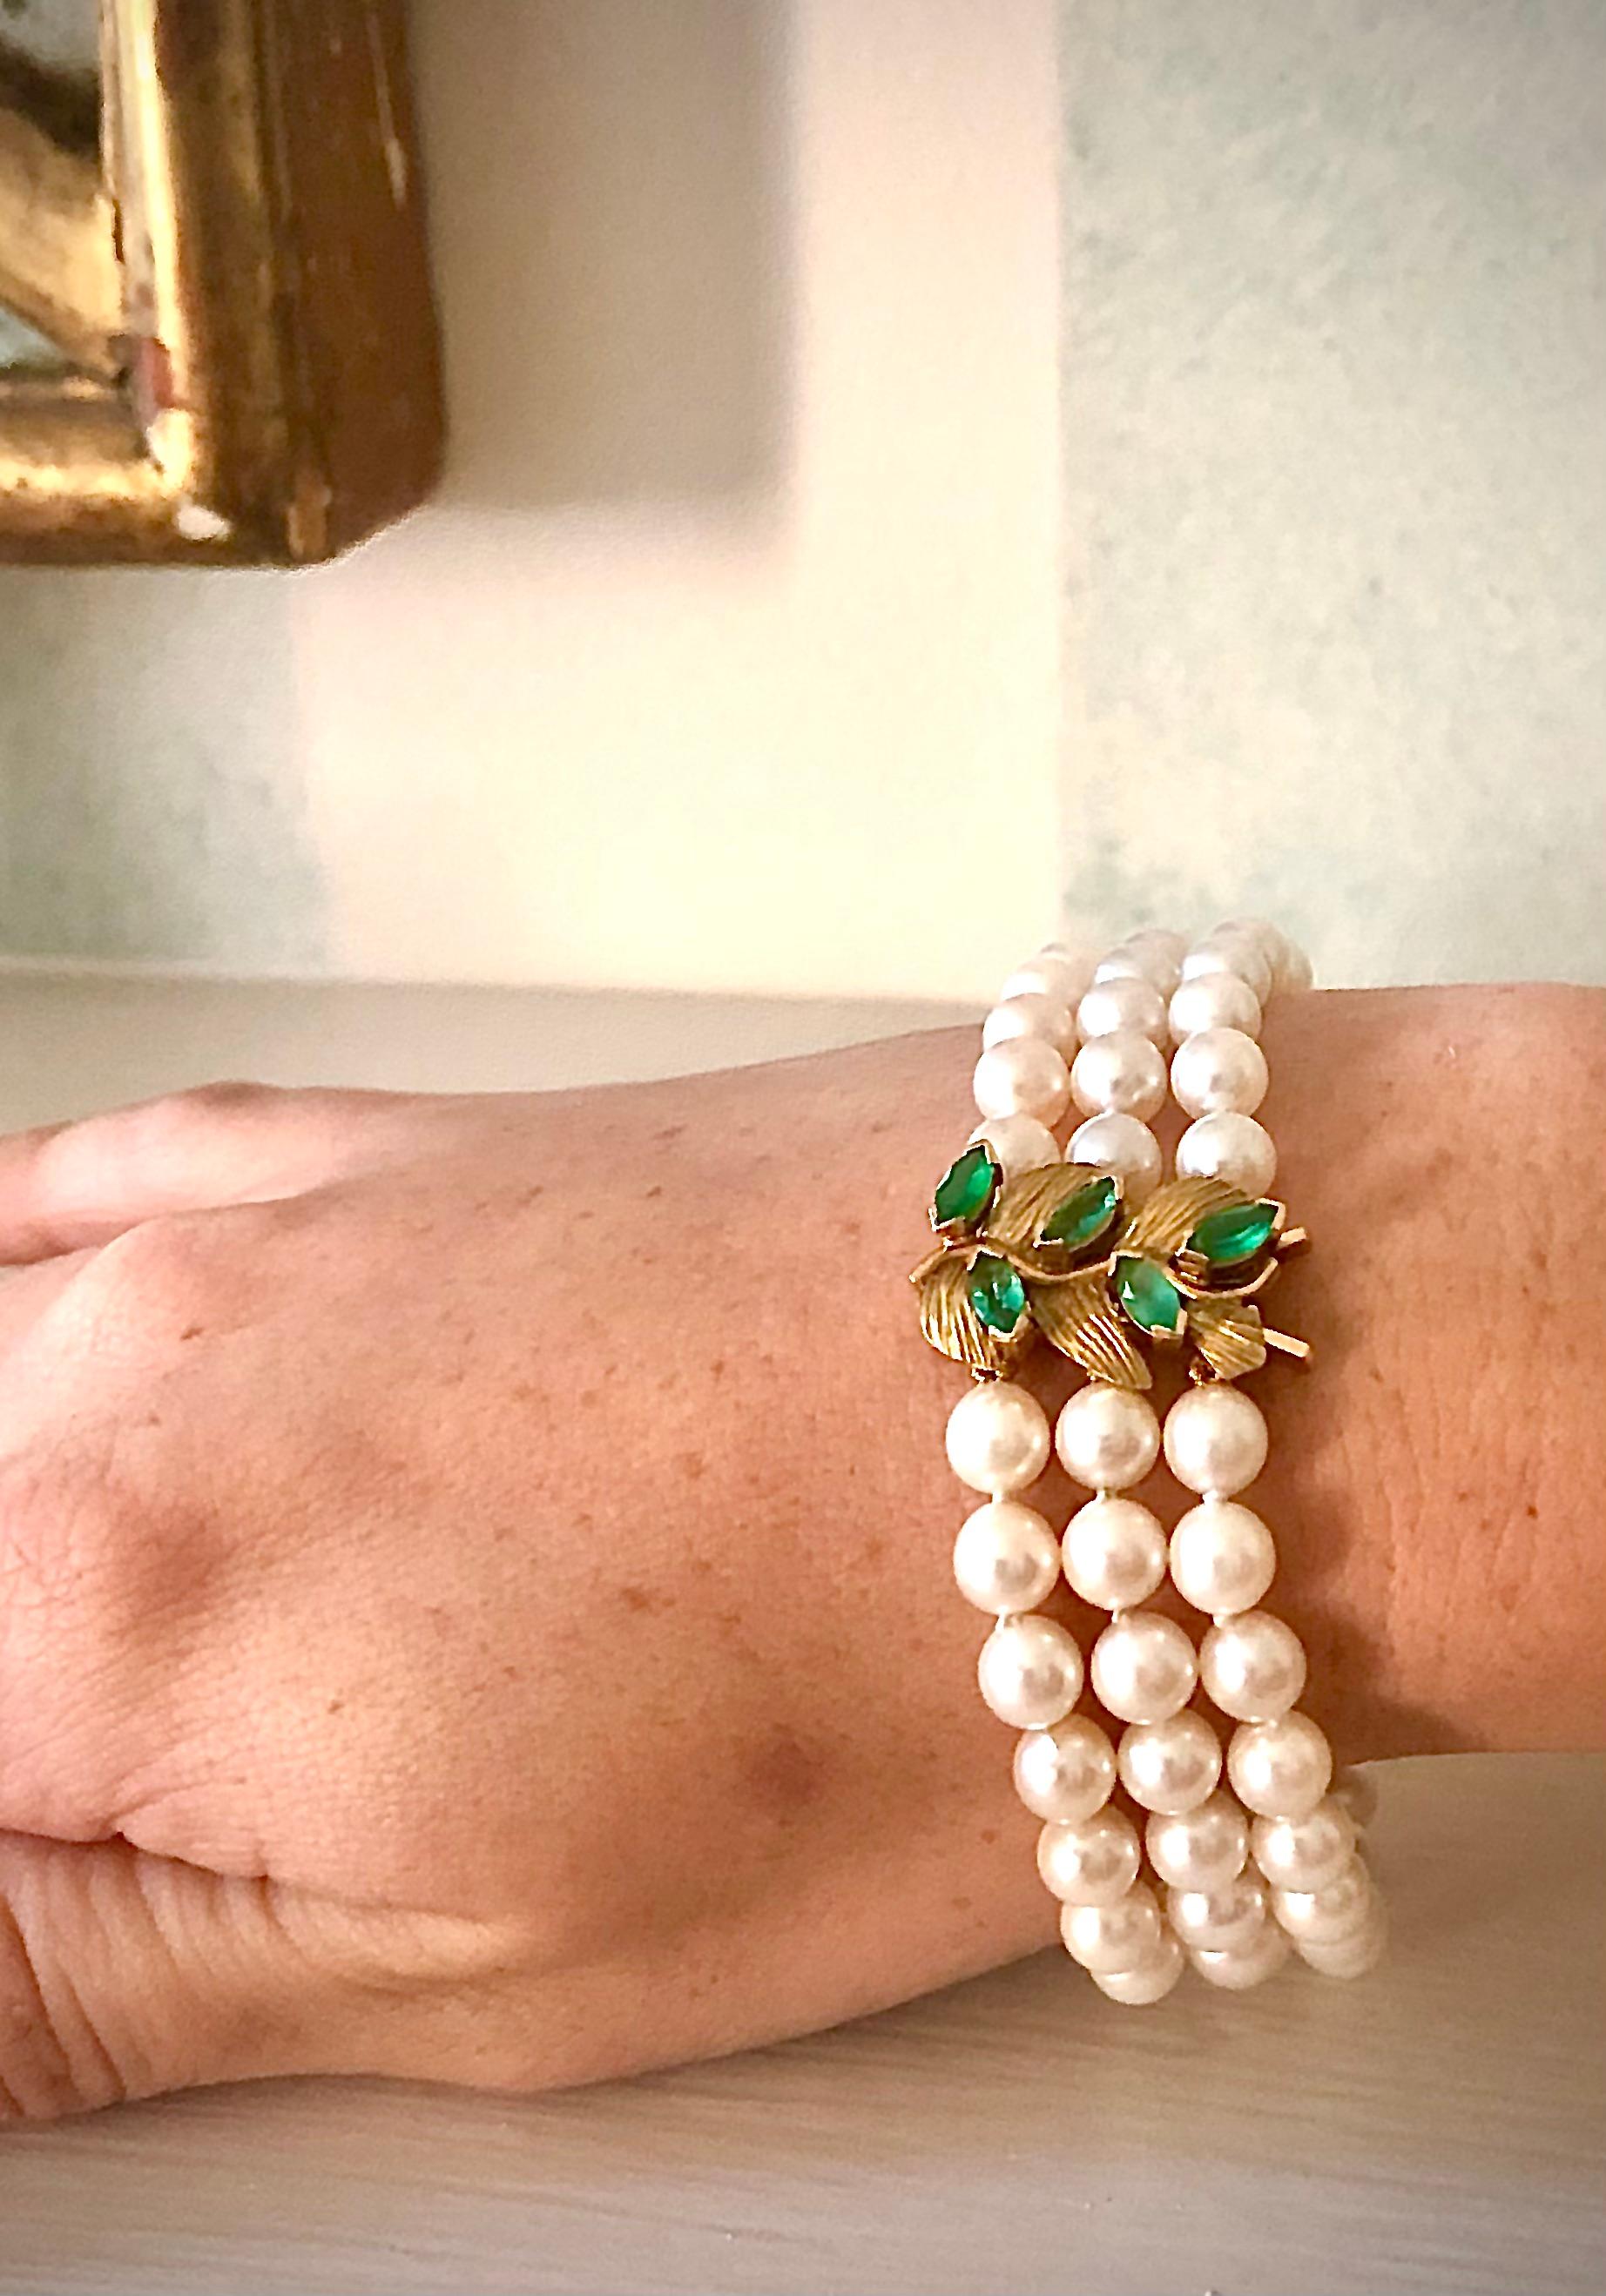 Magnifique bracelet avec trois rangs de perles de culture rondes de haute qualité et d'un éclat exceptionnel. Les perles ont un diamètre moyen de 6,35 mm. Il y a deux barres de séparation en or relativement lourdes.

Le fermoir est très joliment